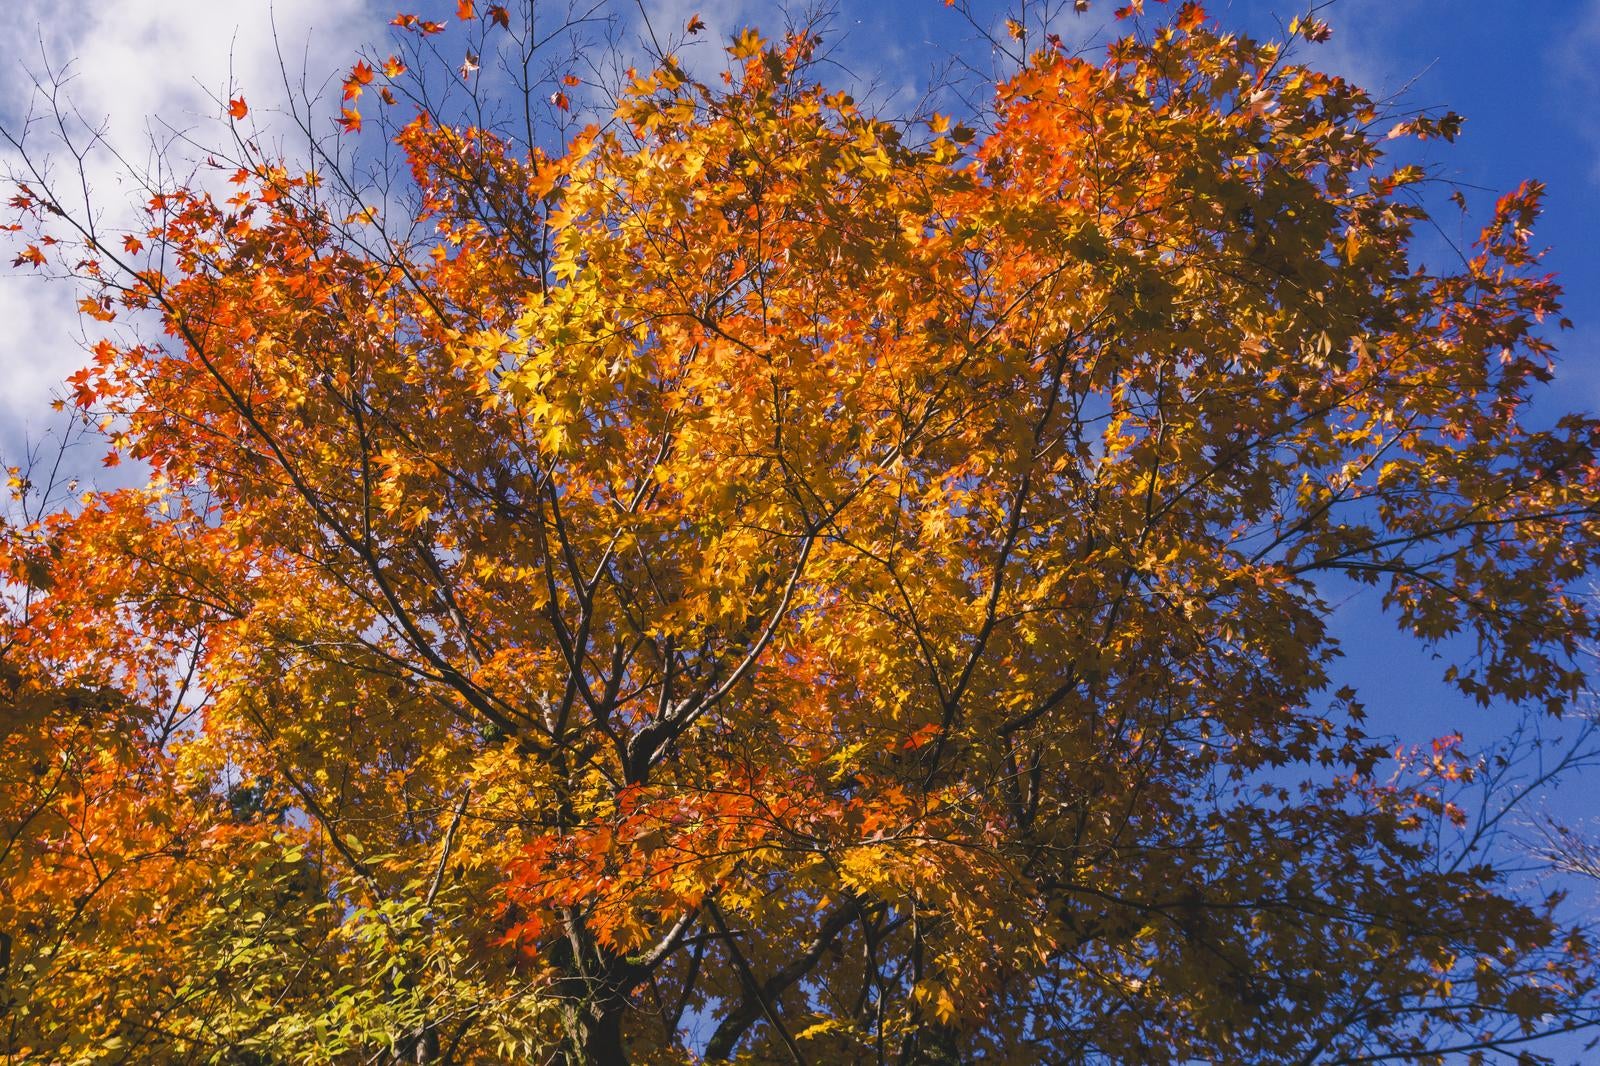 「秋晴れの空いっぱいに広がる紅葉」の写真